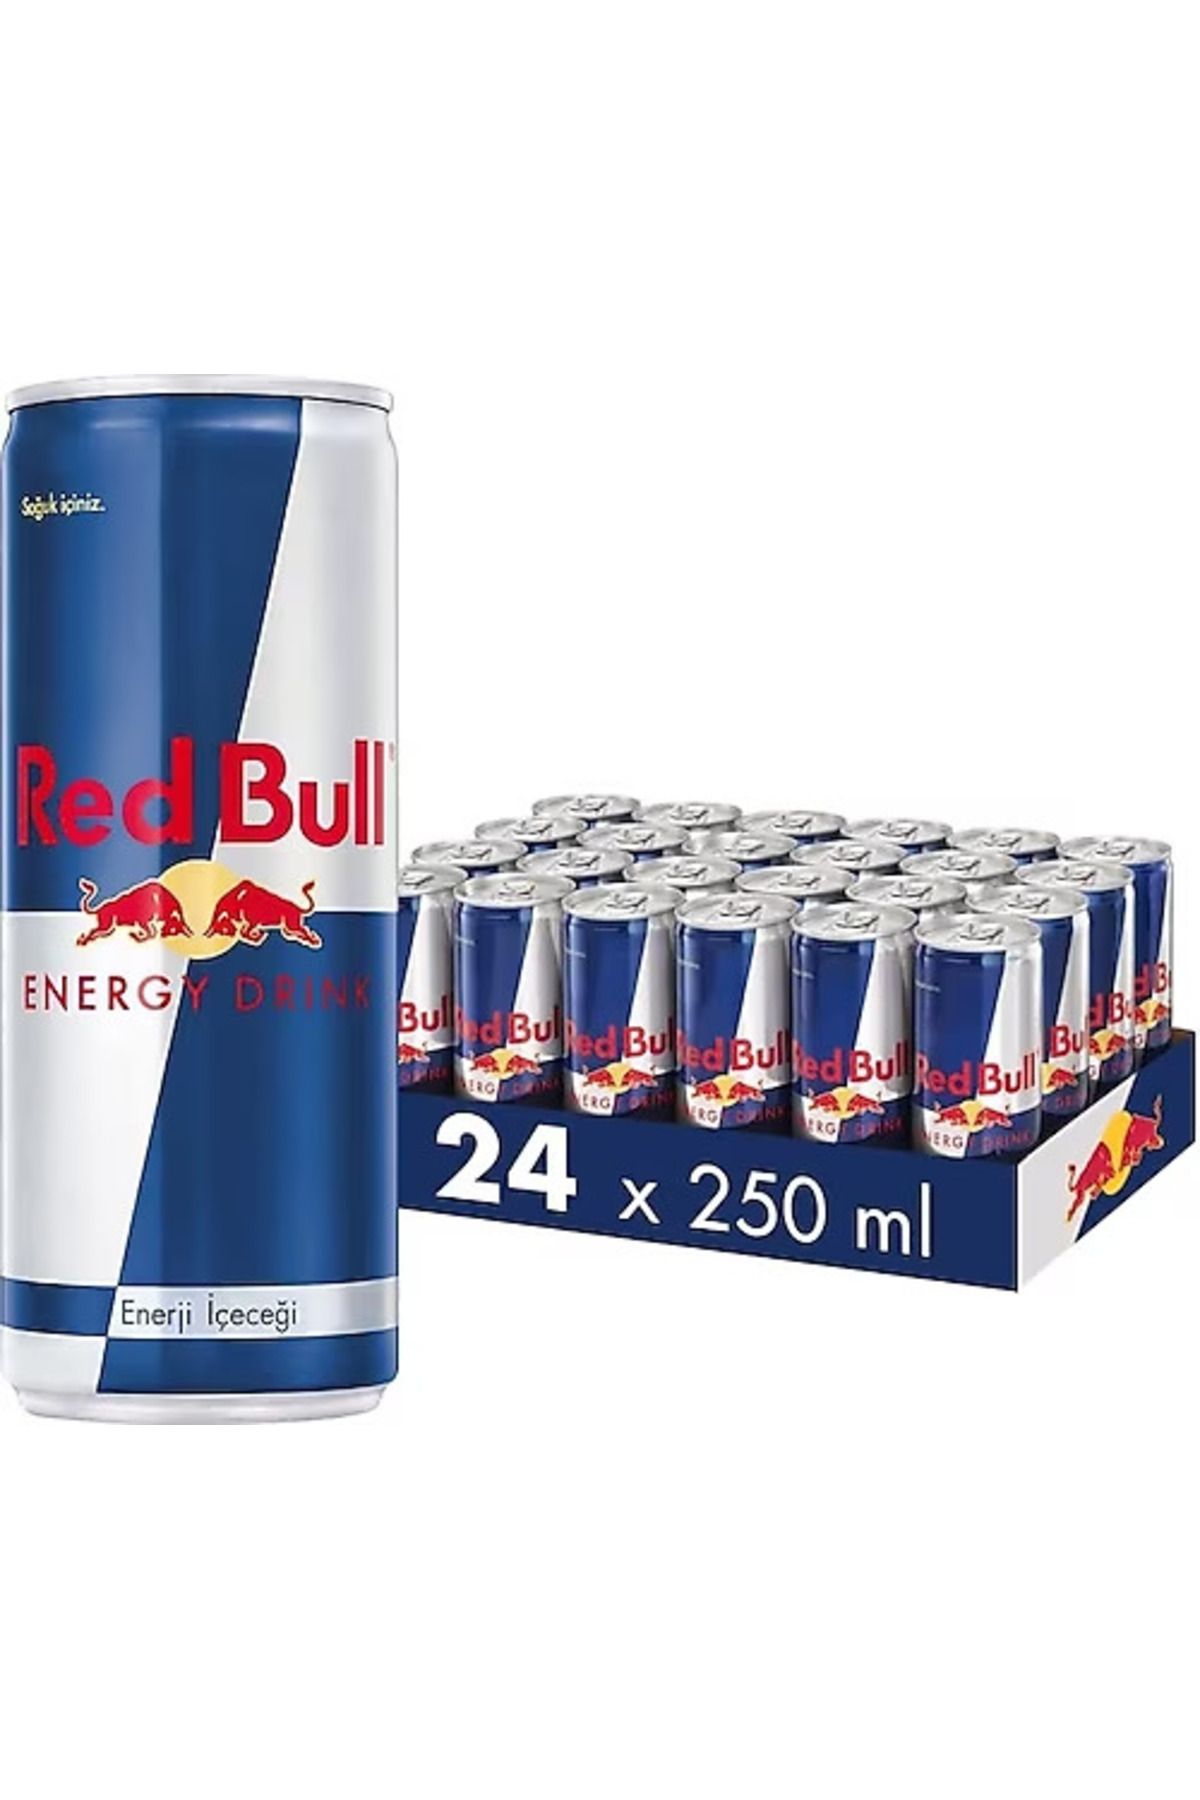 Red Bull 250 ml 24'lü Paket Enerji Içeceği